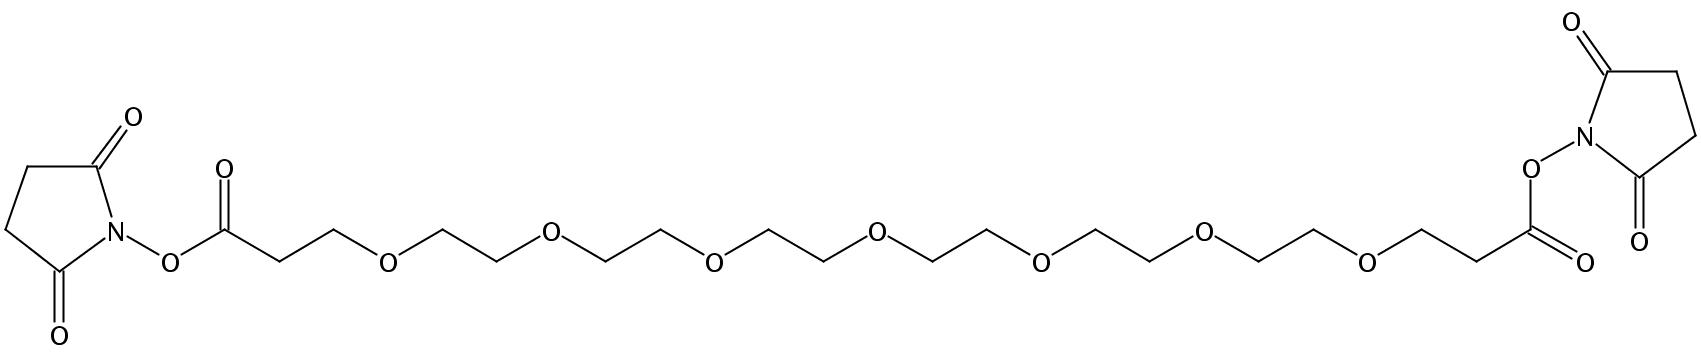 双取代丙烯酸琥珀酰亚胺酯-六聚乙二醇